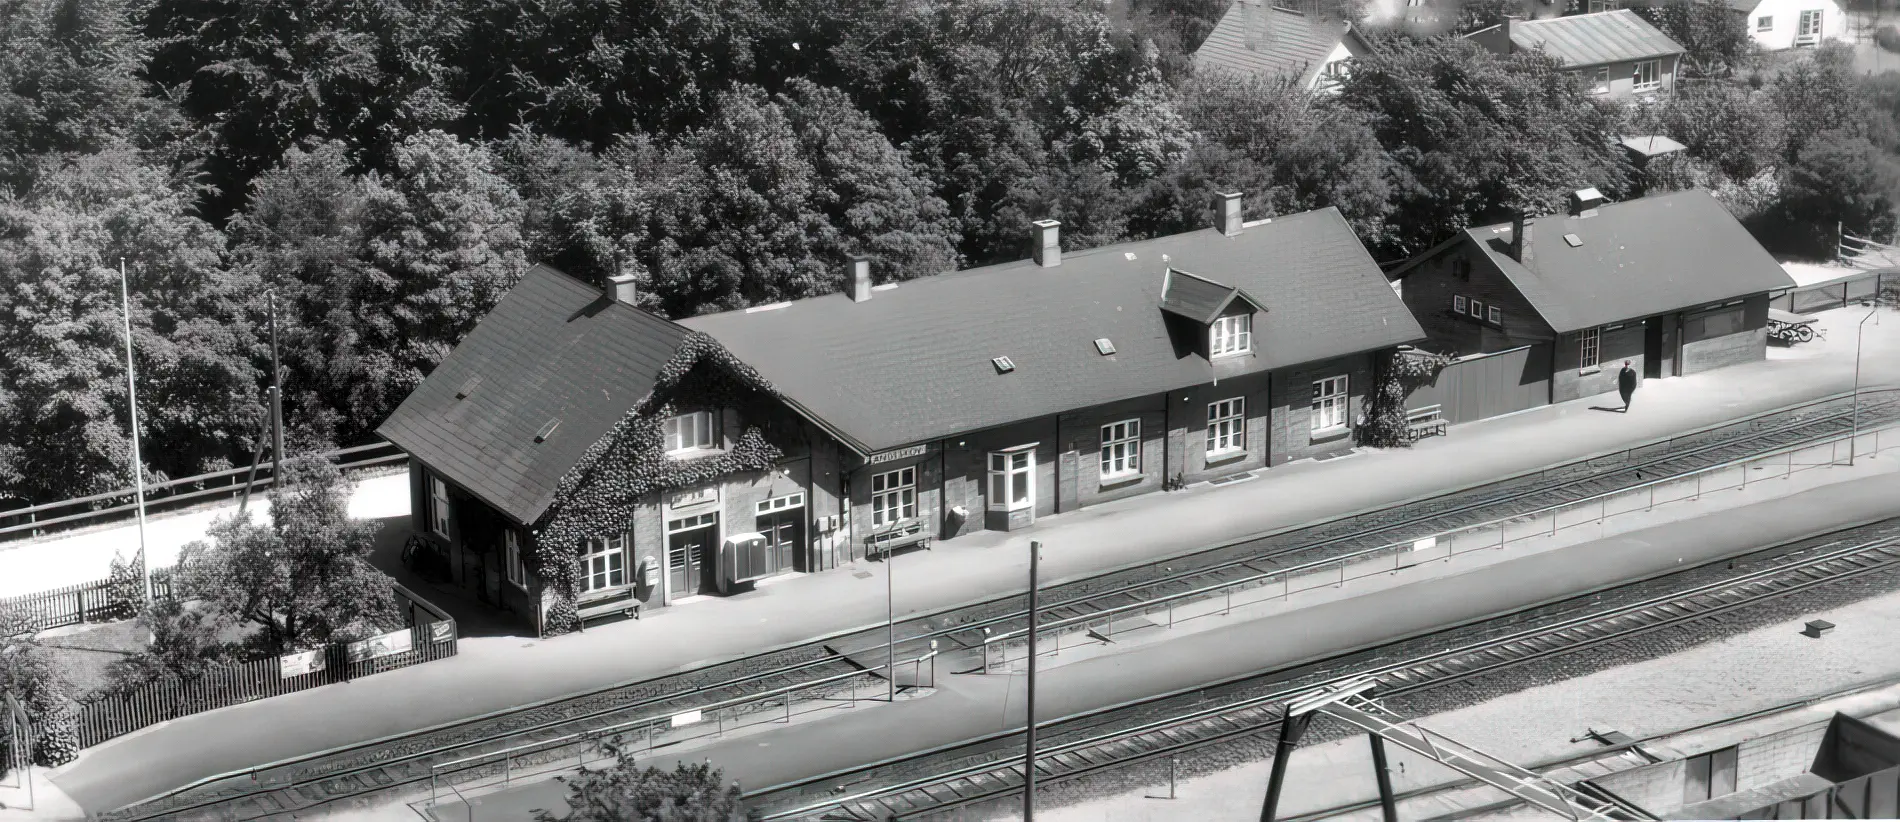 Billede af Langeskov Station.